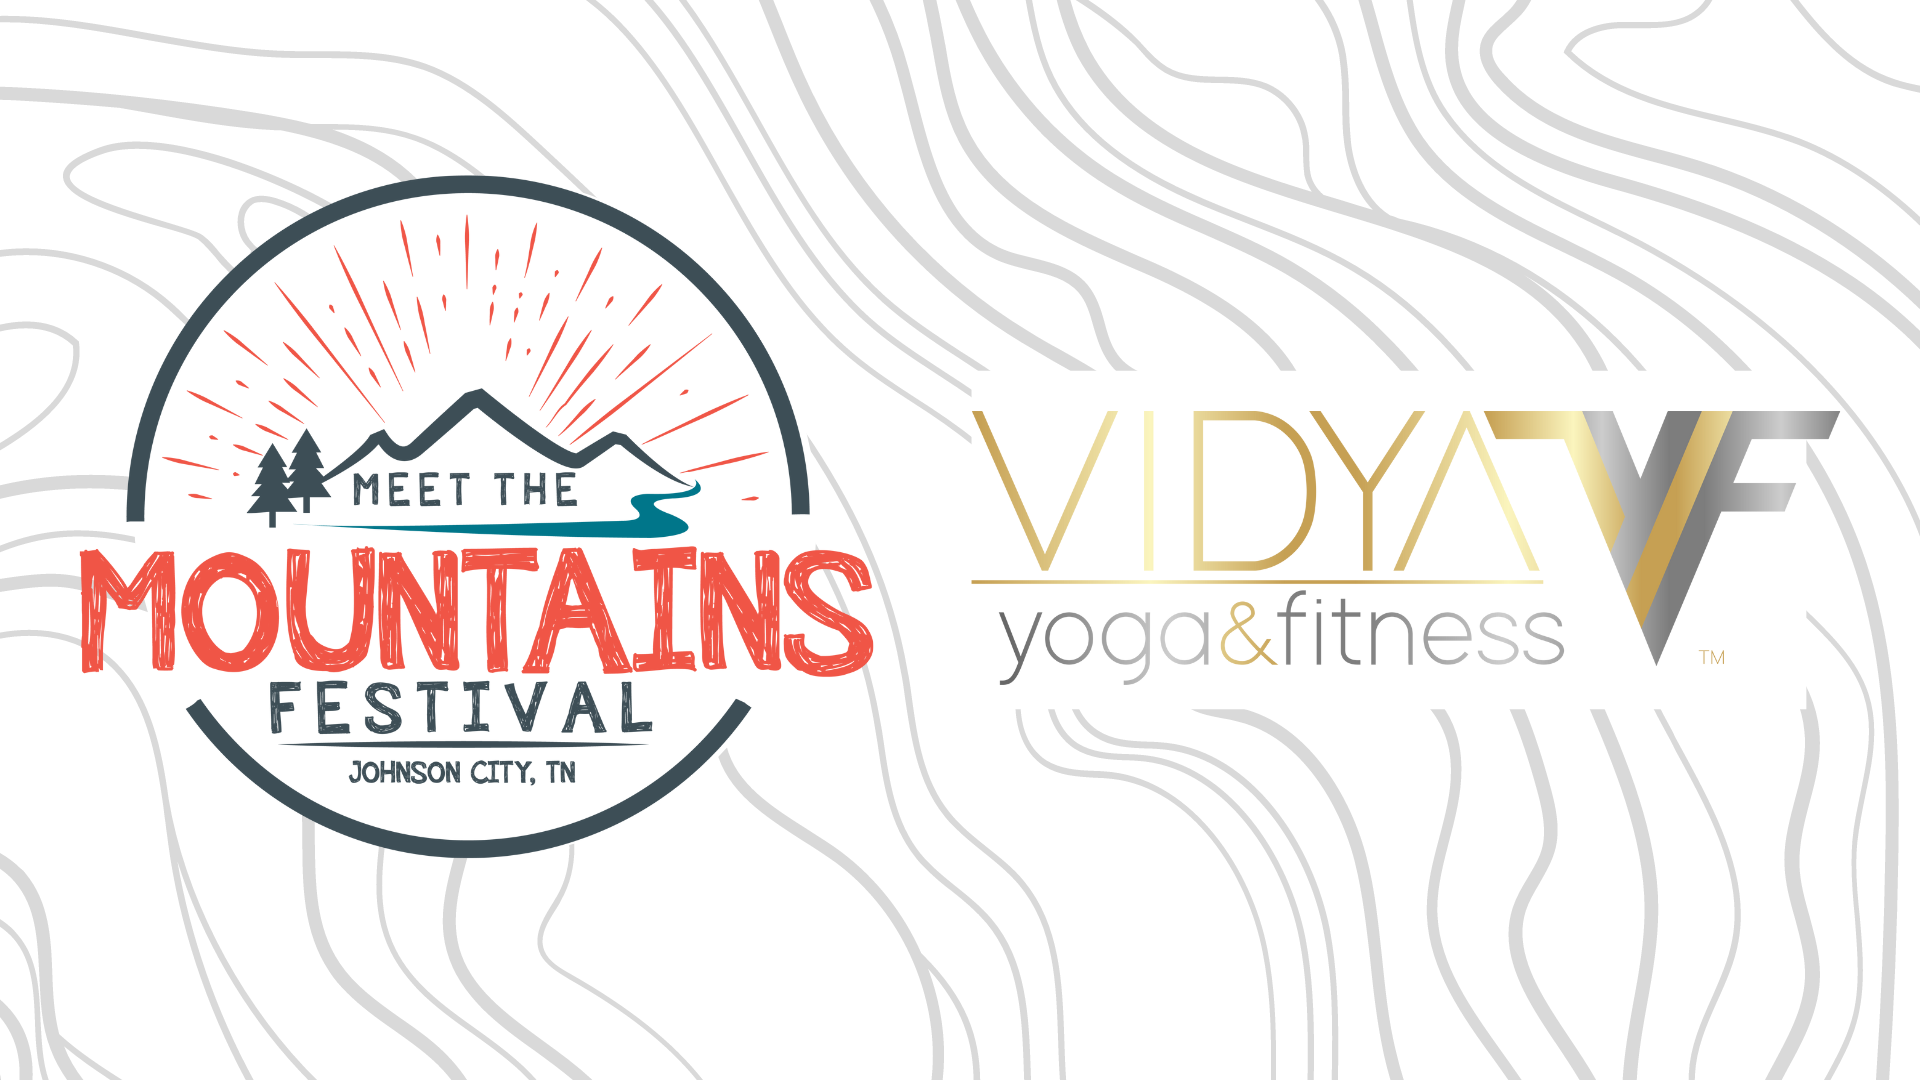 Outdoor Yoga with Vidya Yoga & Fitness